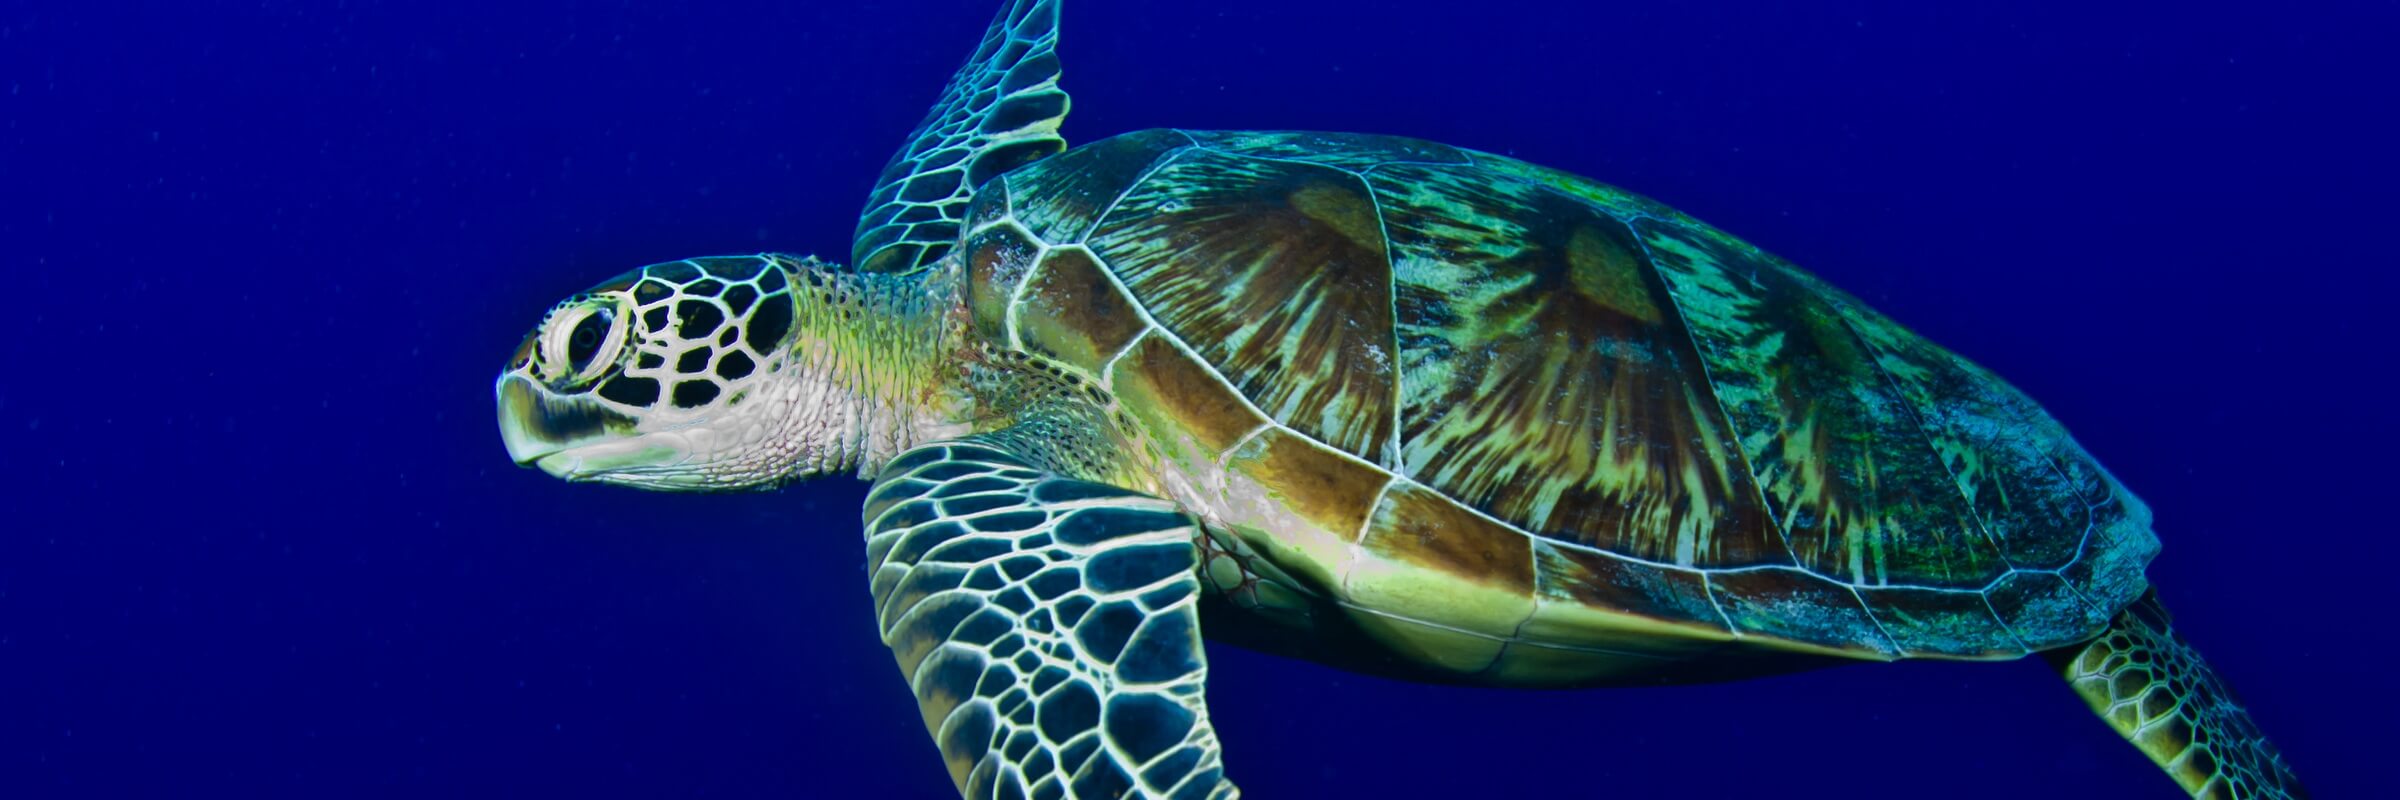 Meeresschildkröten sind in den Gewässern um Palau sehr zahlreich und können fast bei jedem Tauch- oder Schnorchelausflug bewundert werden.